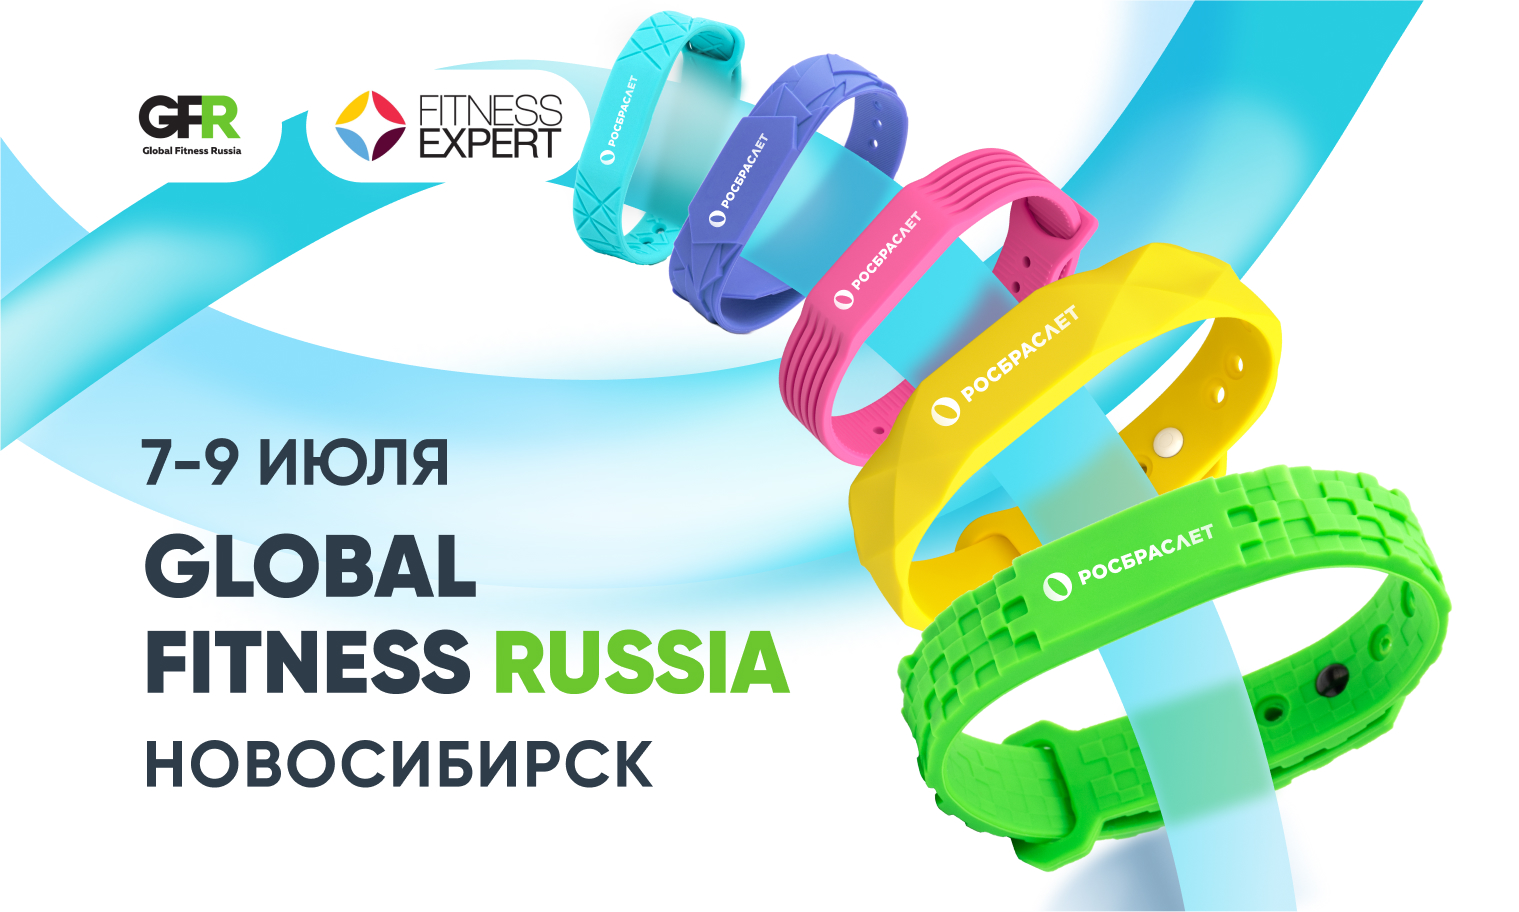 Работа кипит! Представляем новинки продукции на Global Fitness Russia в Новосибирске